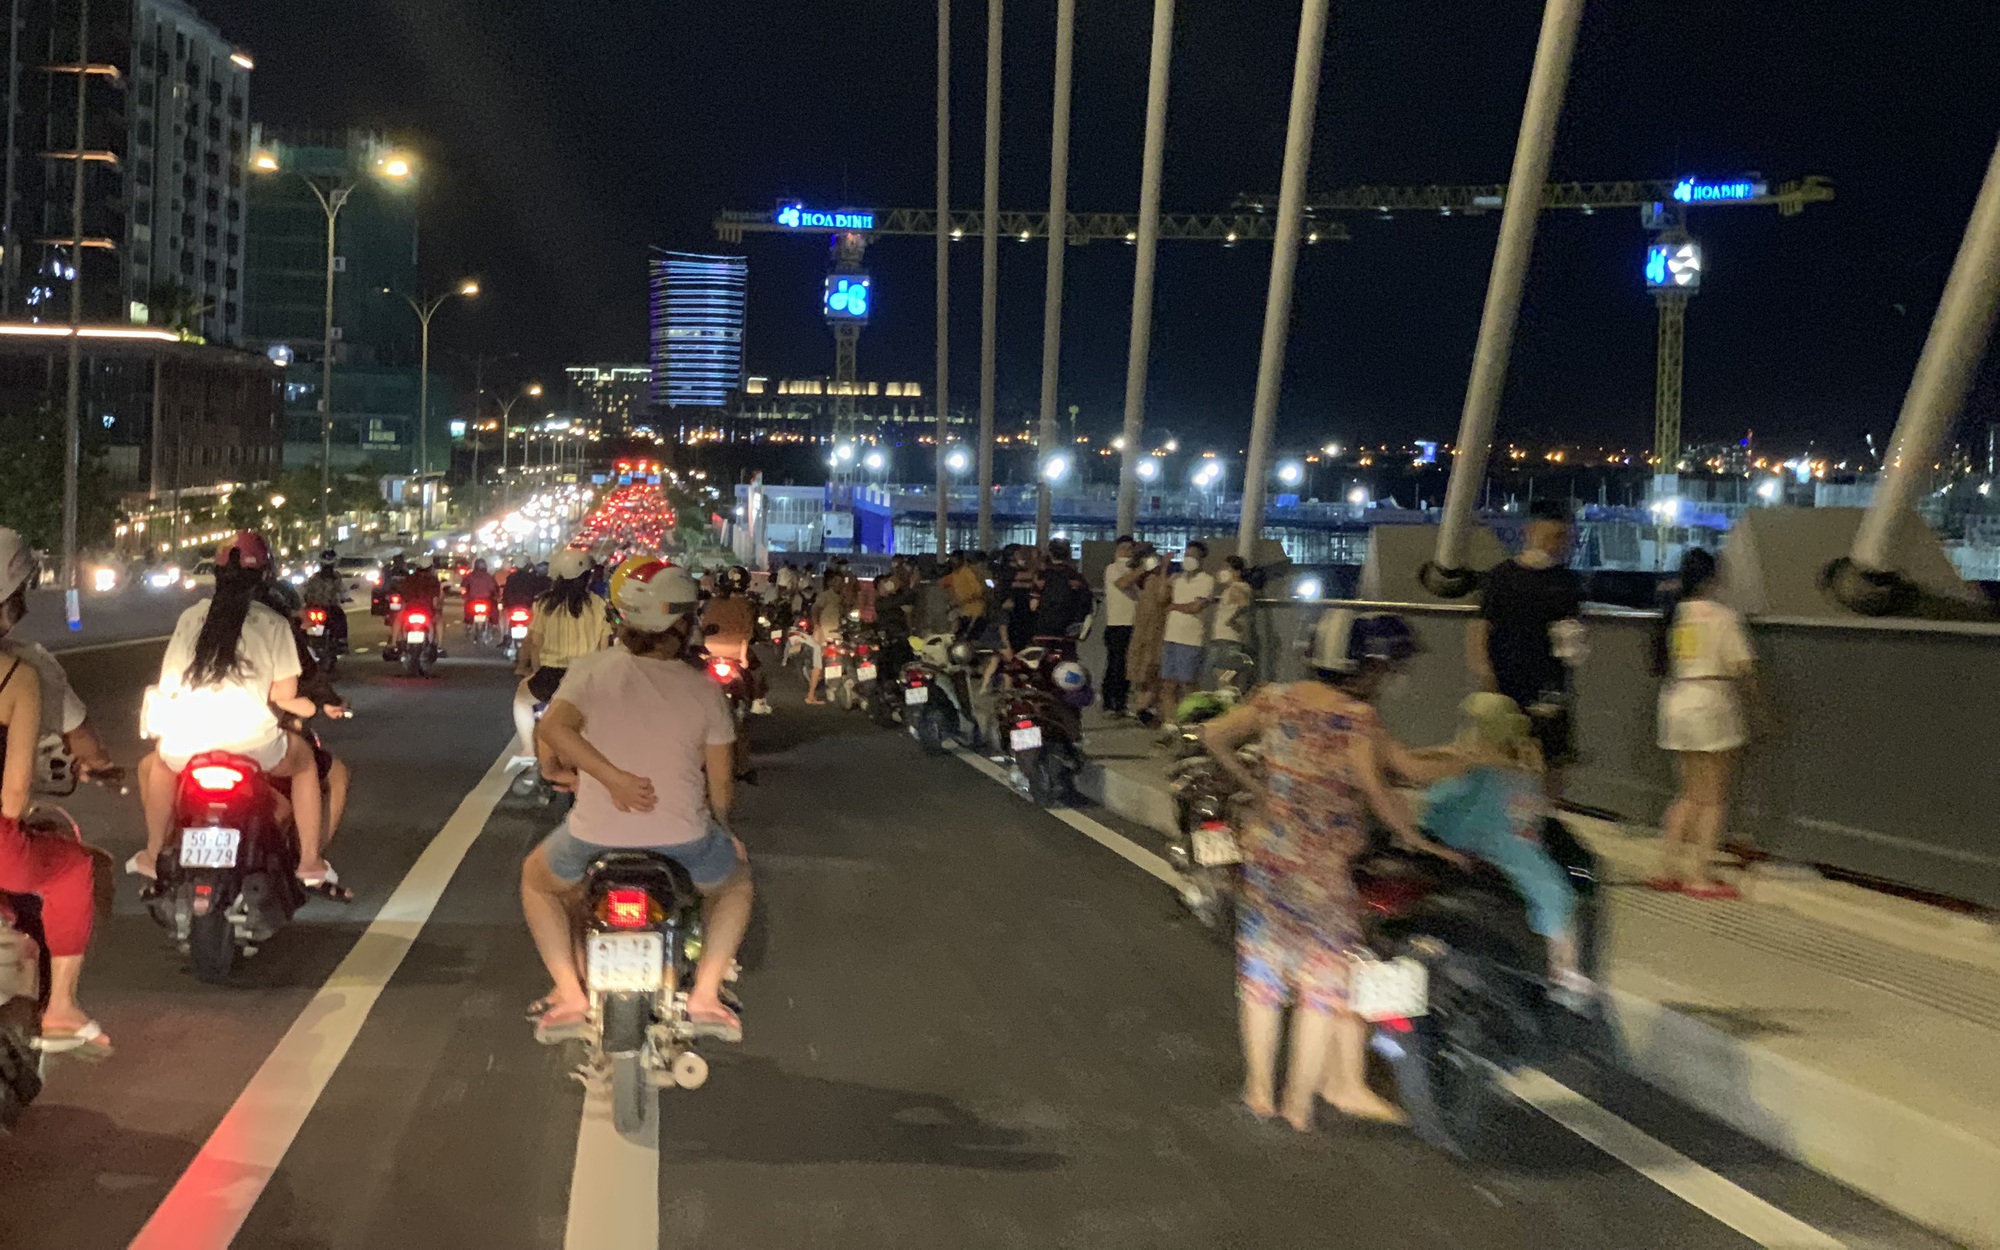 cầu Thủ Thiêm 2 đêm: Là công trình kiến trúc độc đáo, cầu Thủ Thiêm 2 là điểm đến lý tưởng để trải nghiệm Sài Gòn đêm. Khi phố xá lắng im, cầu Thủ Thiêm 2 trở thành một bức tranh sáng tạo đầy hình ảnh ấn tượng.